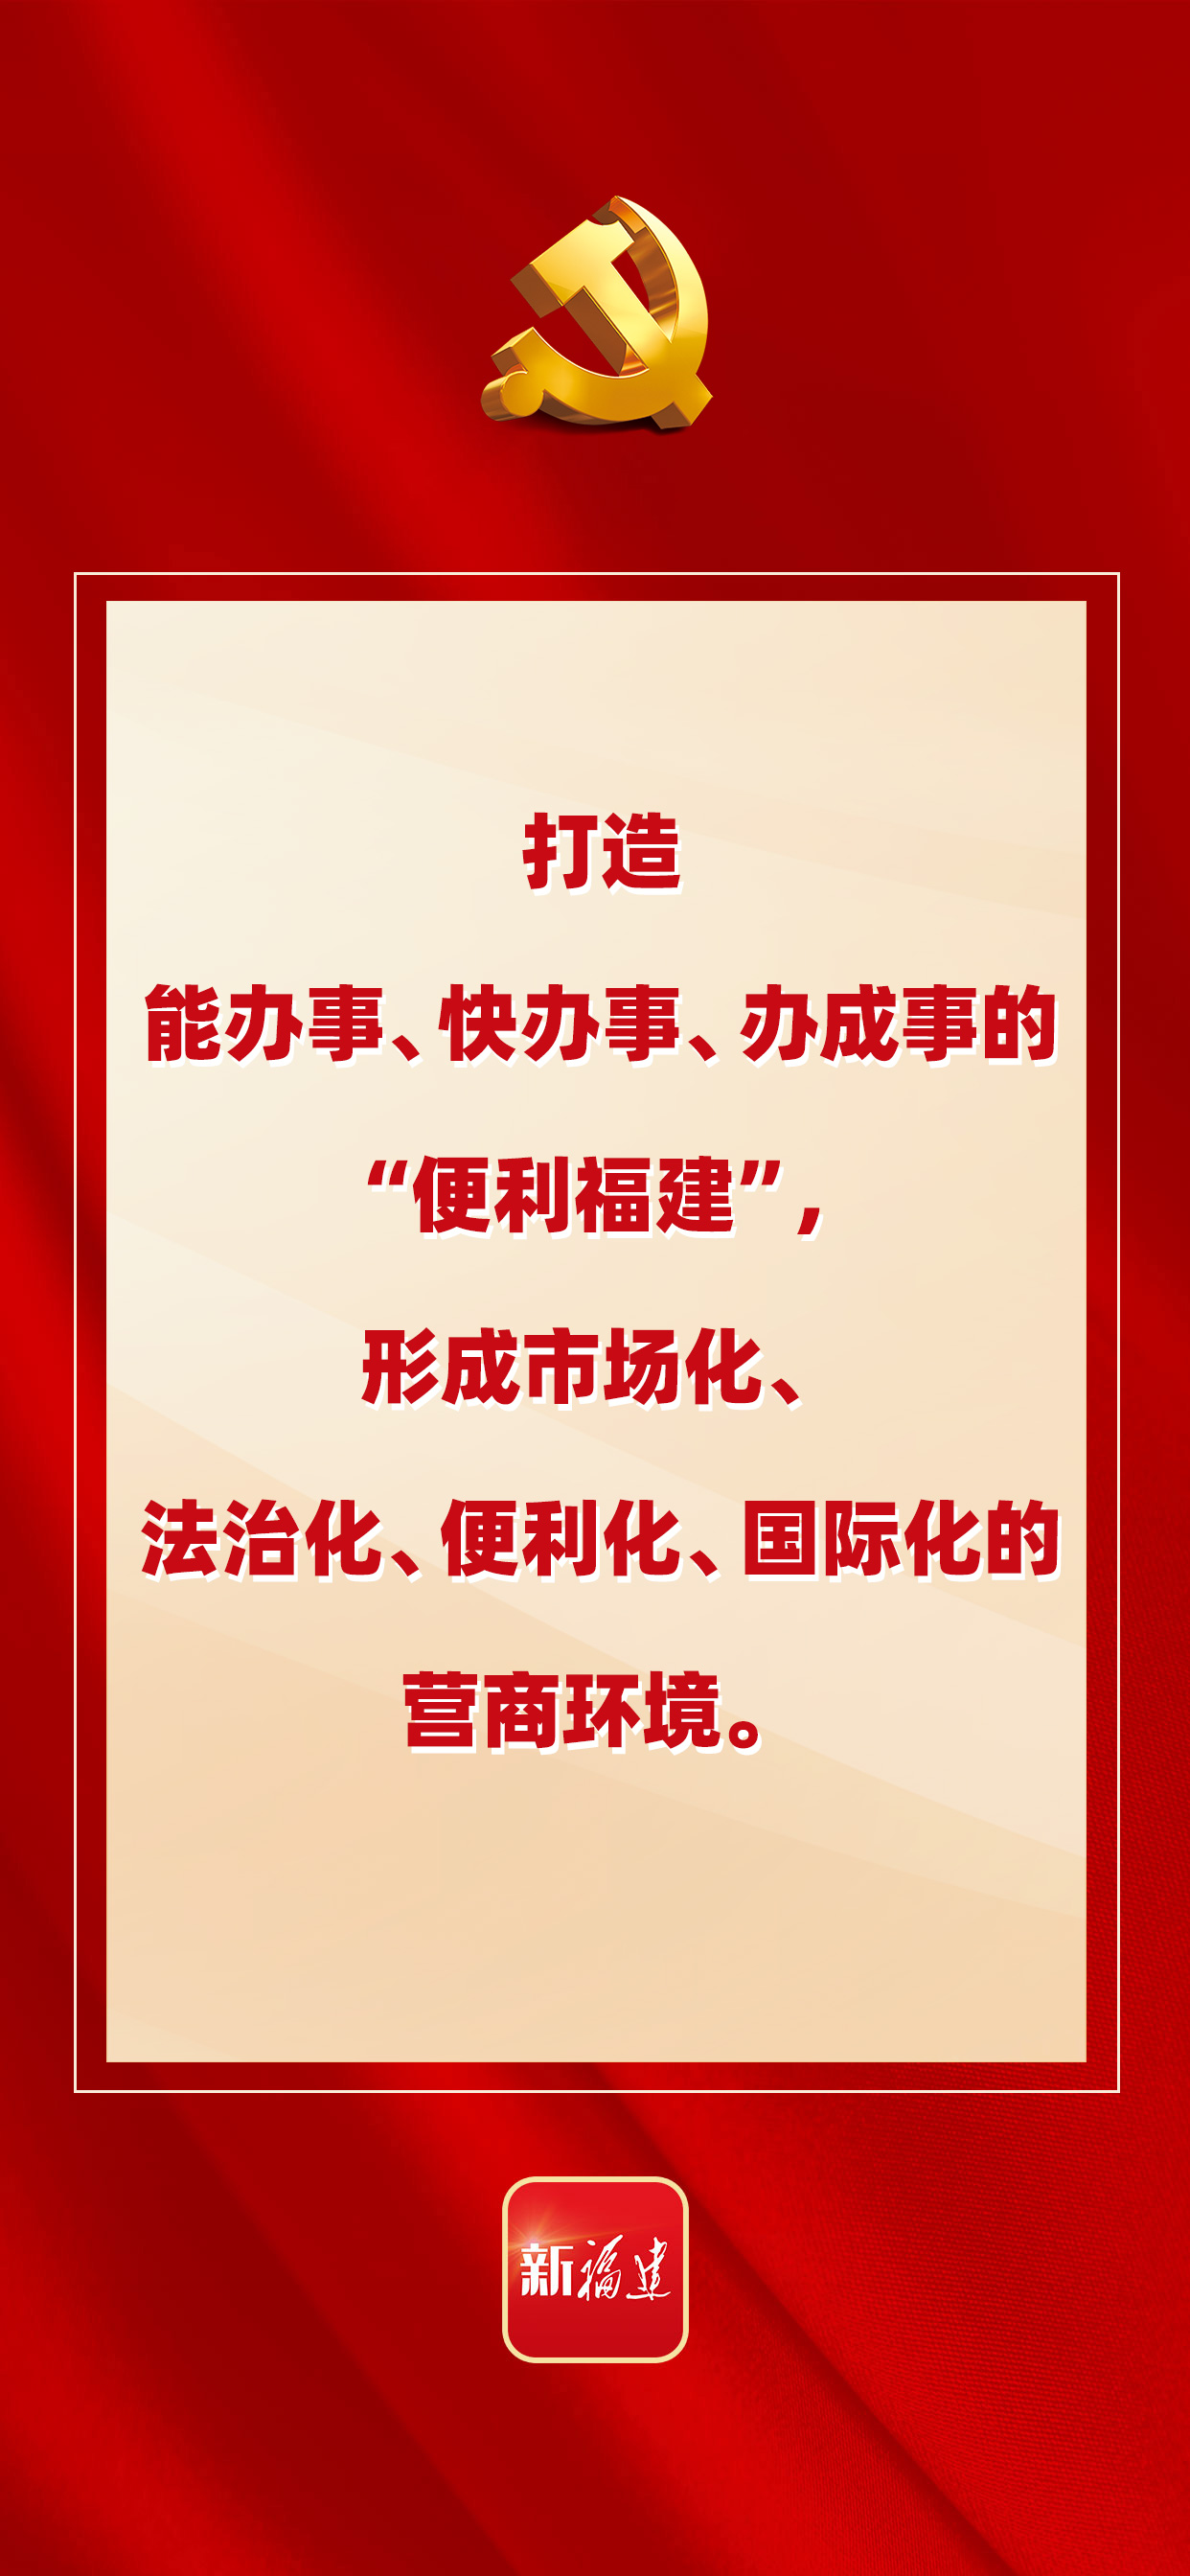 中国共产党福建省第十一次代表大会报告亮点速递